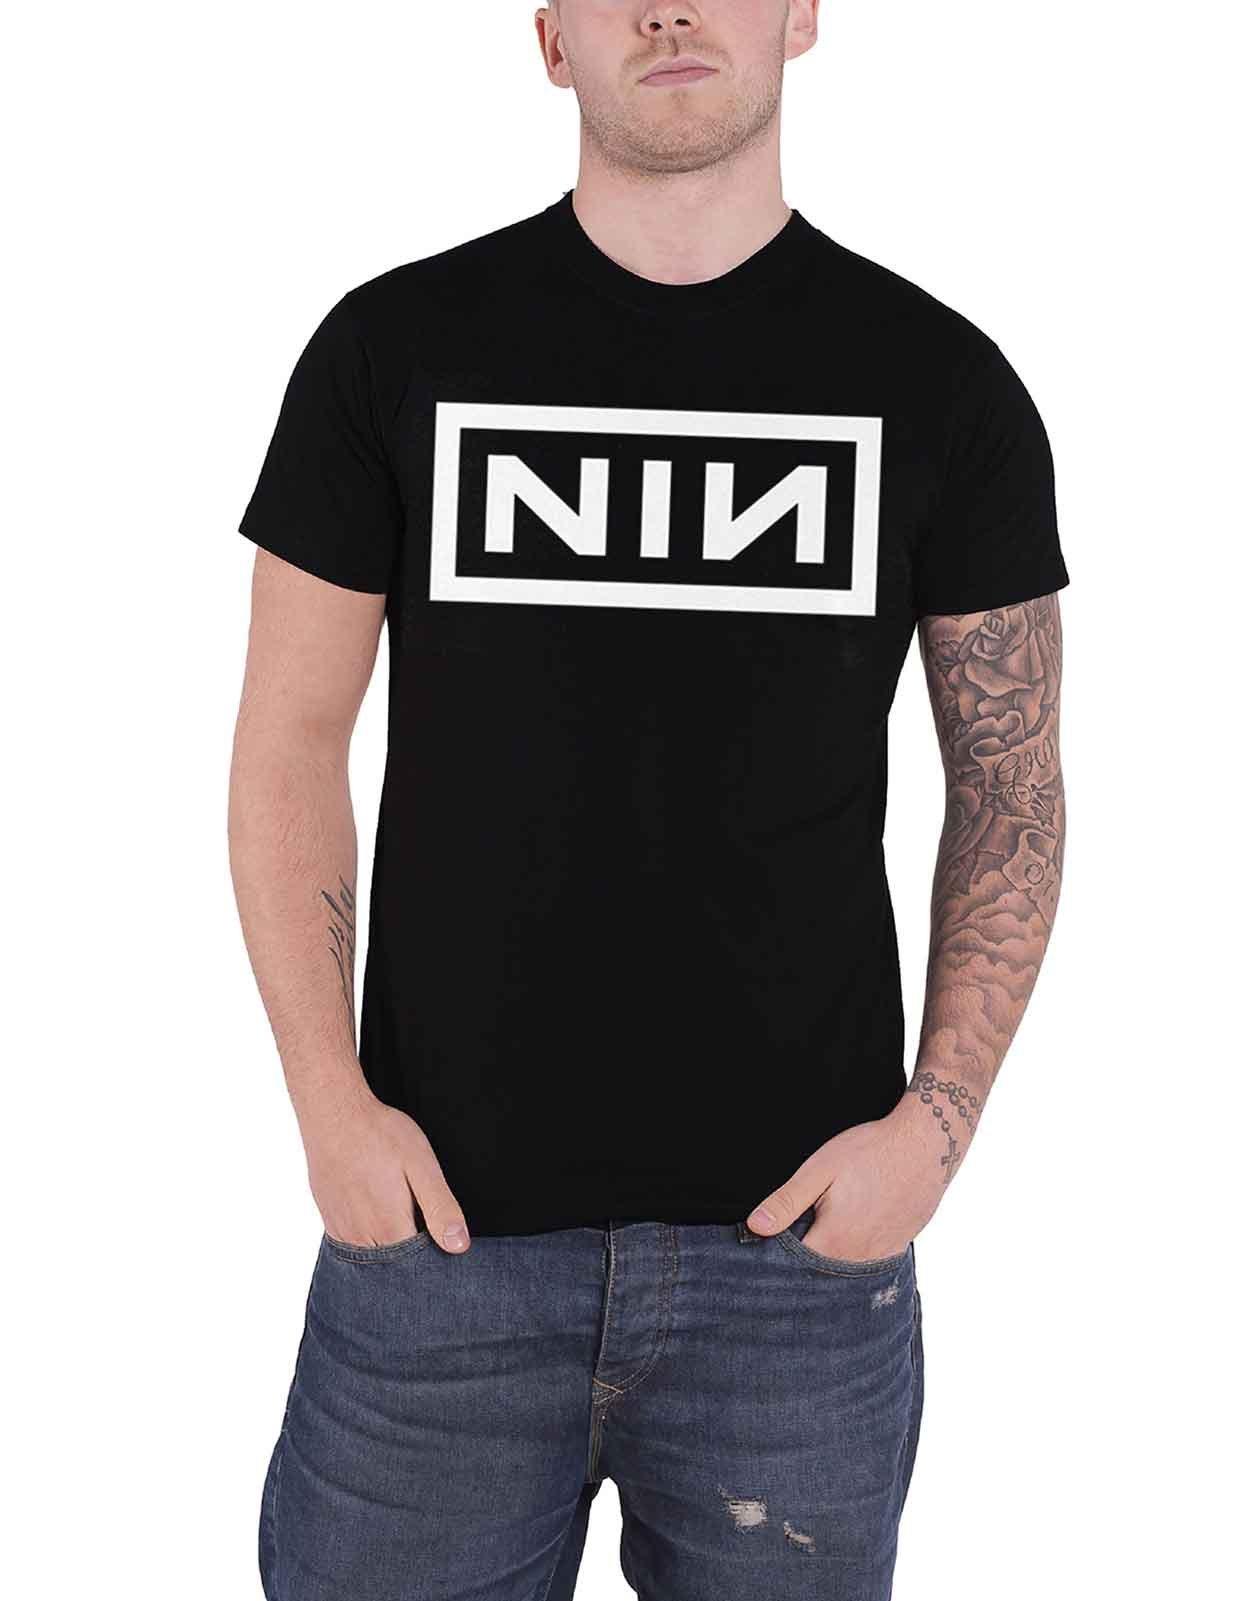 Футболка с логотипом группы Nine Inch Nails, черный футболка с логотипом nine inch nails красный